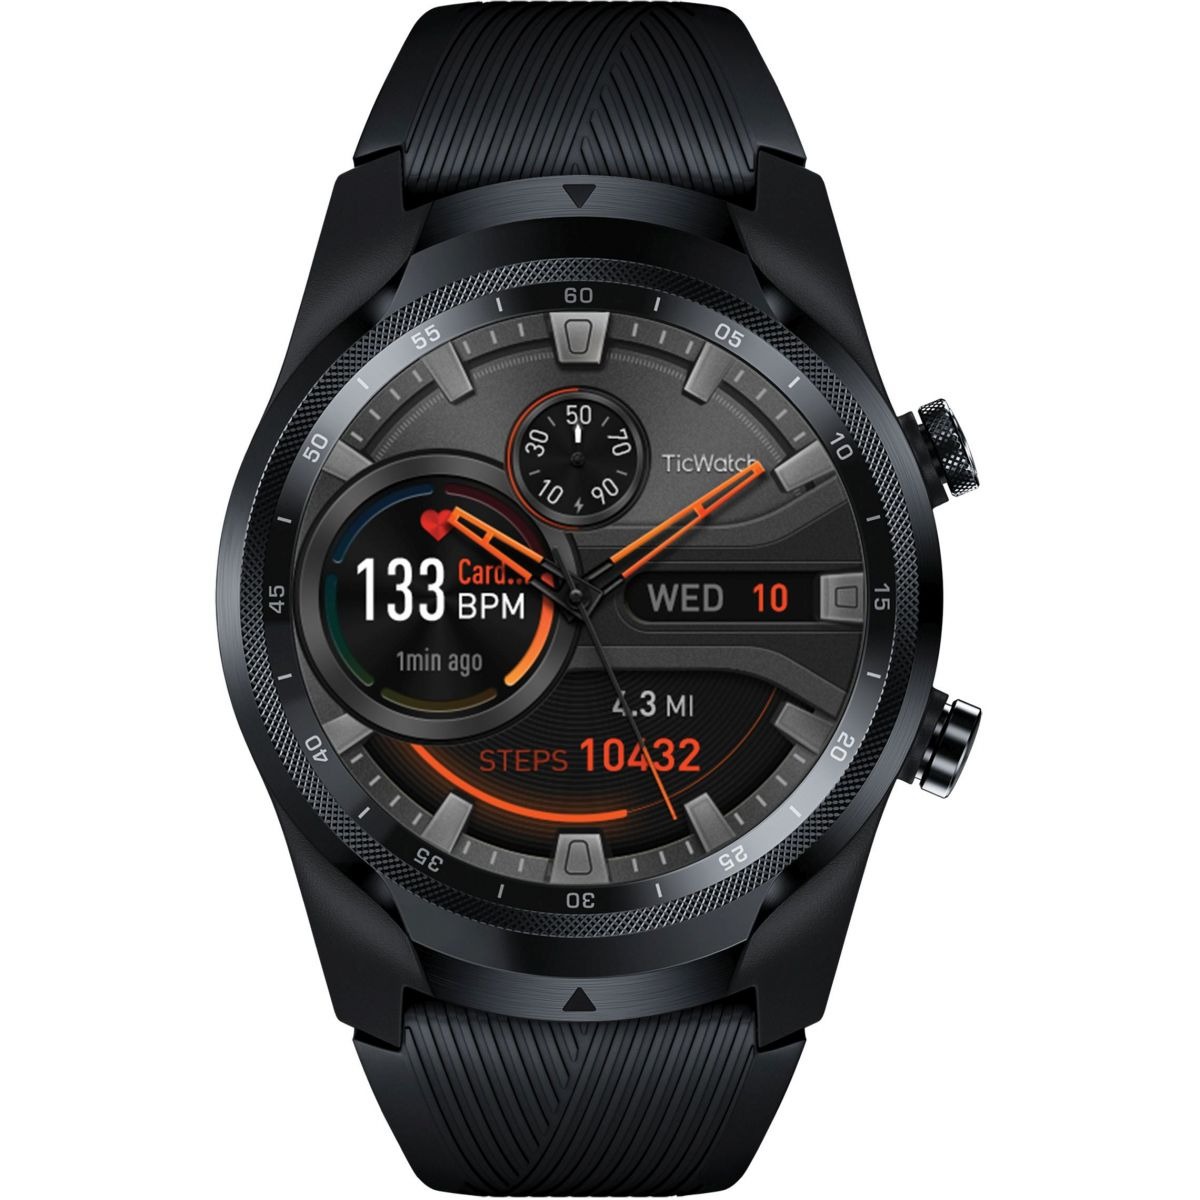 Mobvoi - Smartwatch - Black - Watch Shop GOOFASH